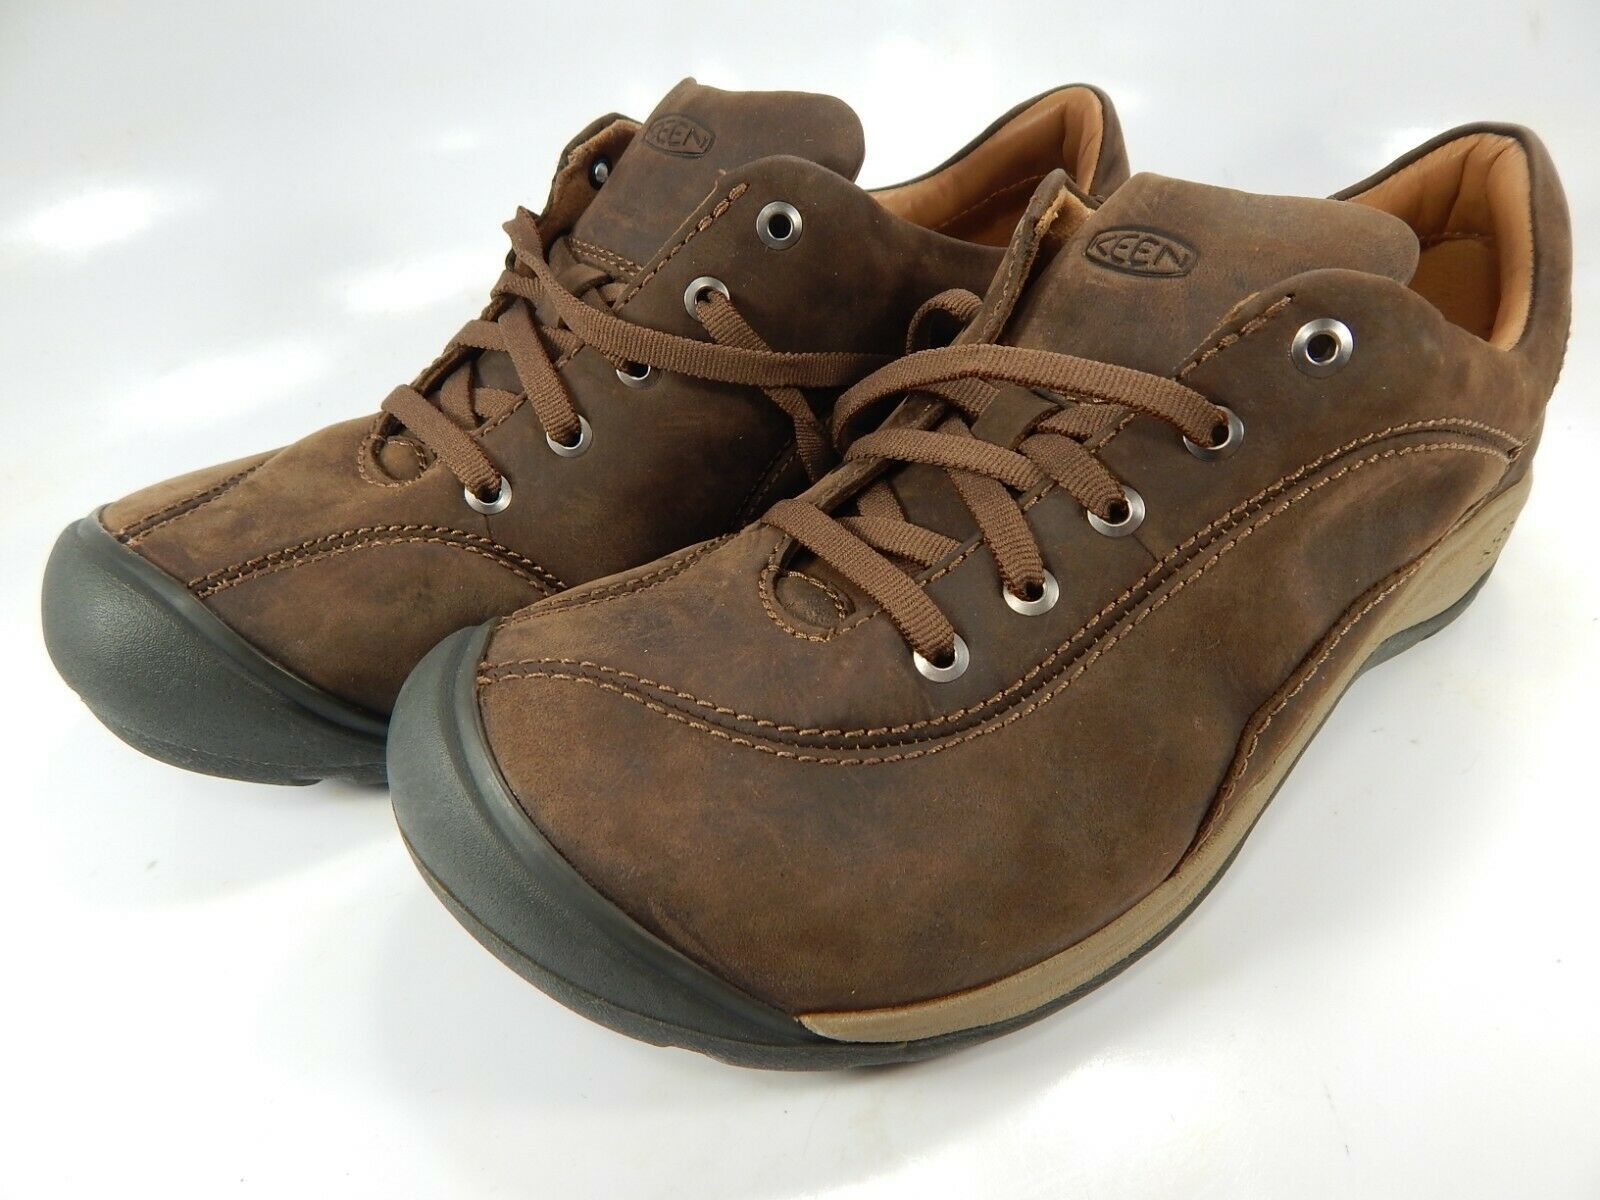 Keen Presidio II Size US 8 M (B) EU 38.5 Women's Casual Oxford Shoes ...